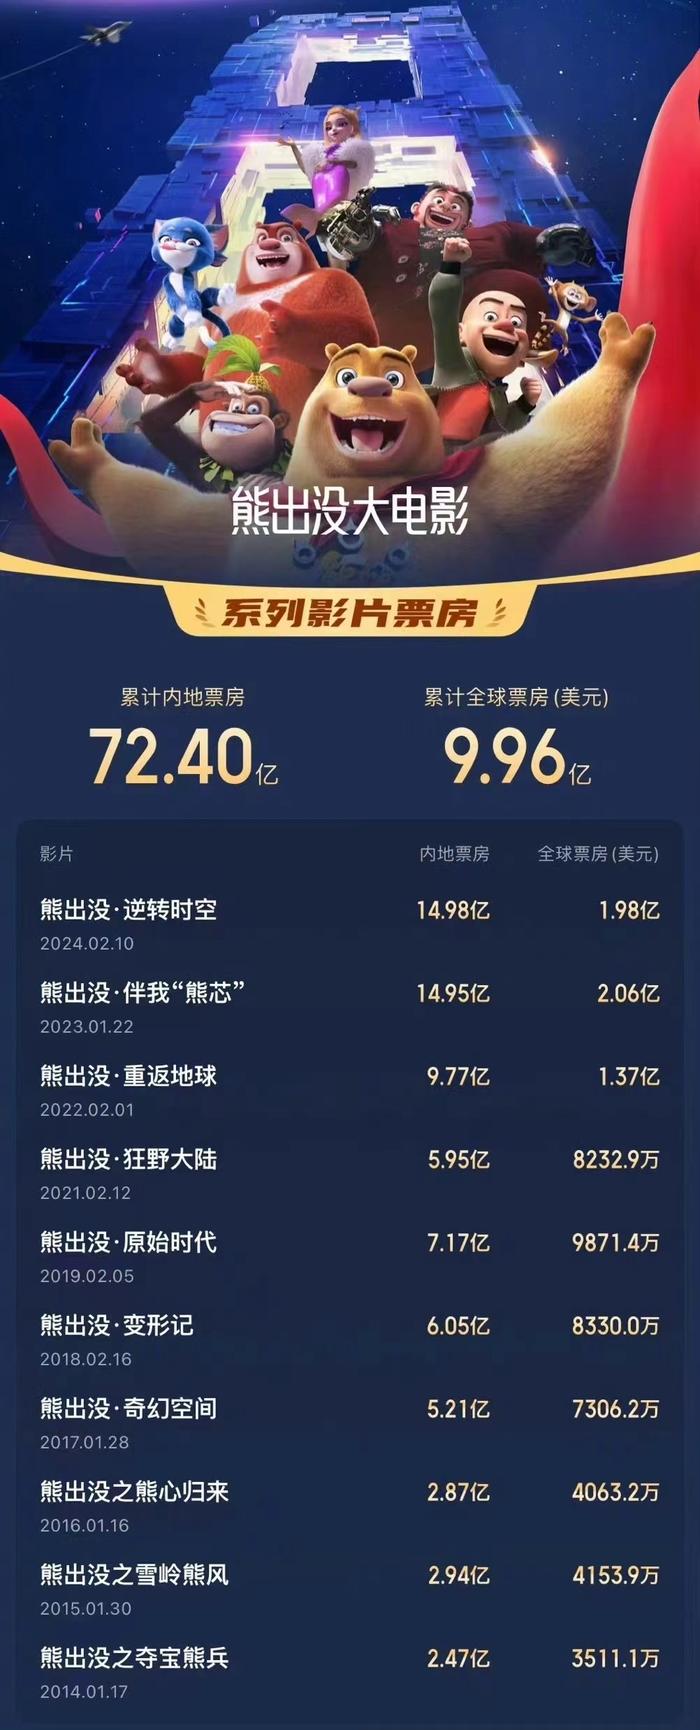 《熊出没10》进入中国影史动画电影票房TOP3